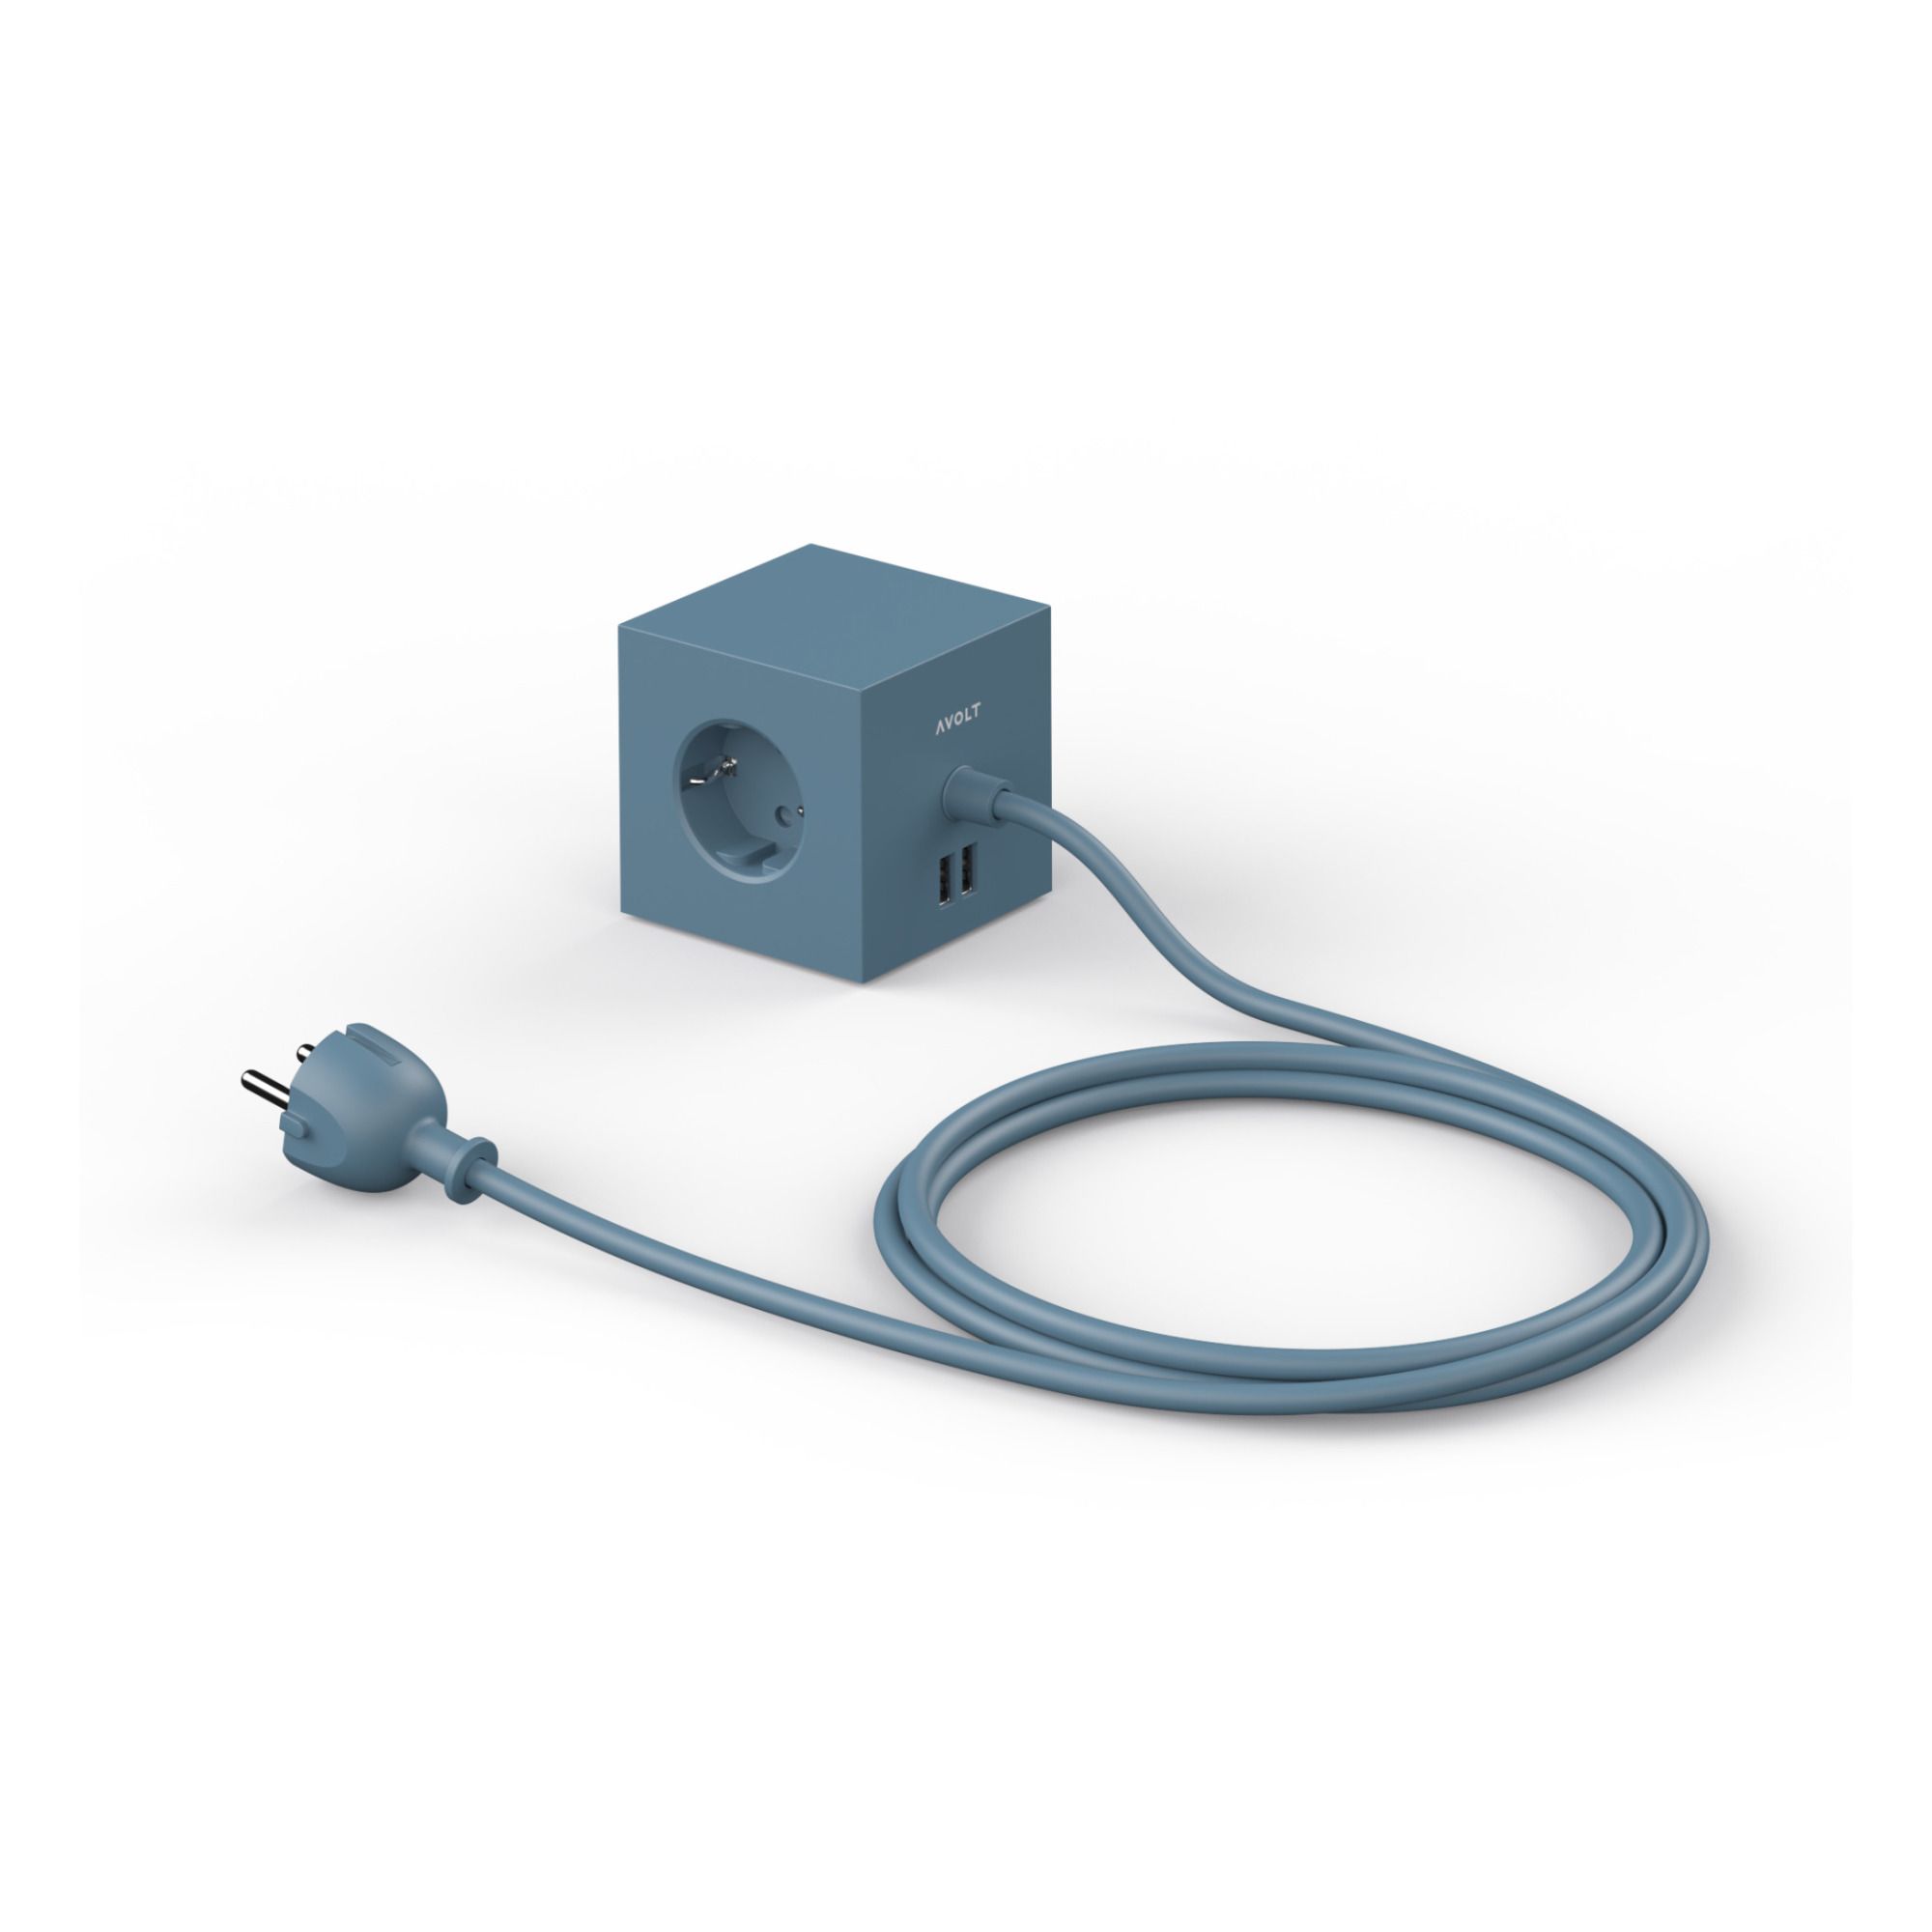 Avolt - Rallonge Square 1 avec prise USB - Bleu